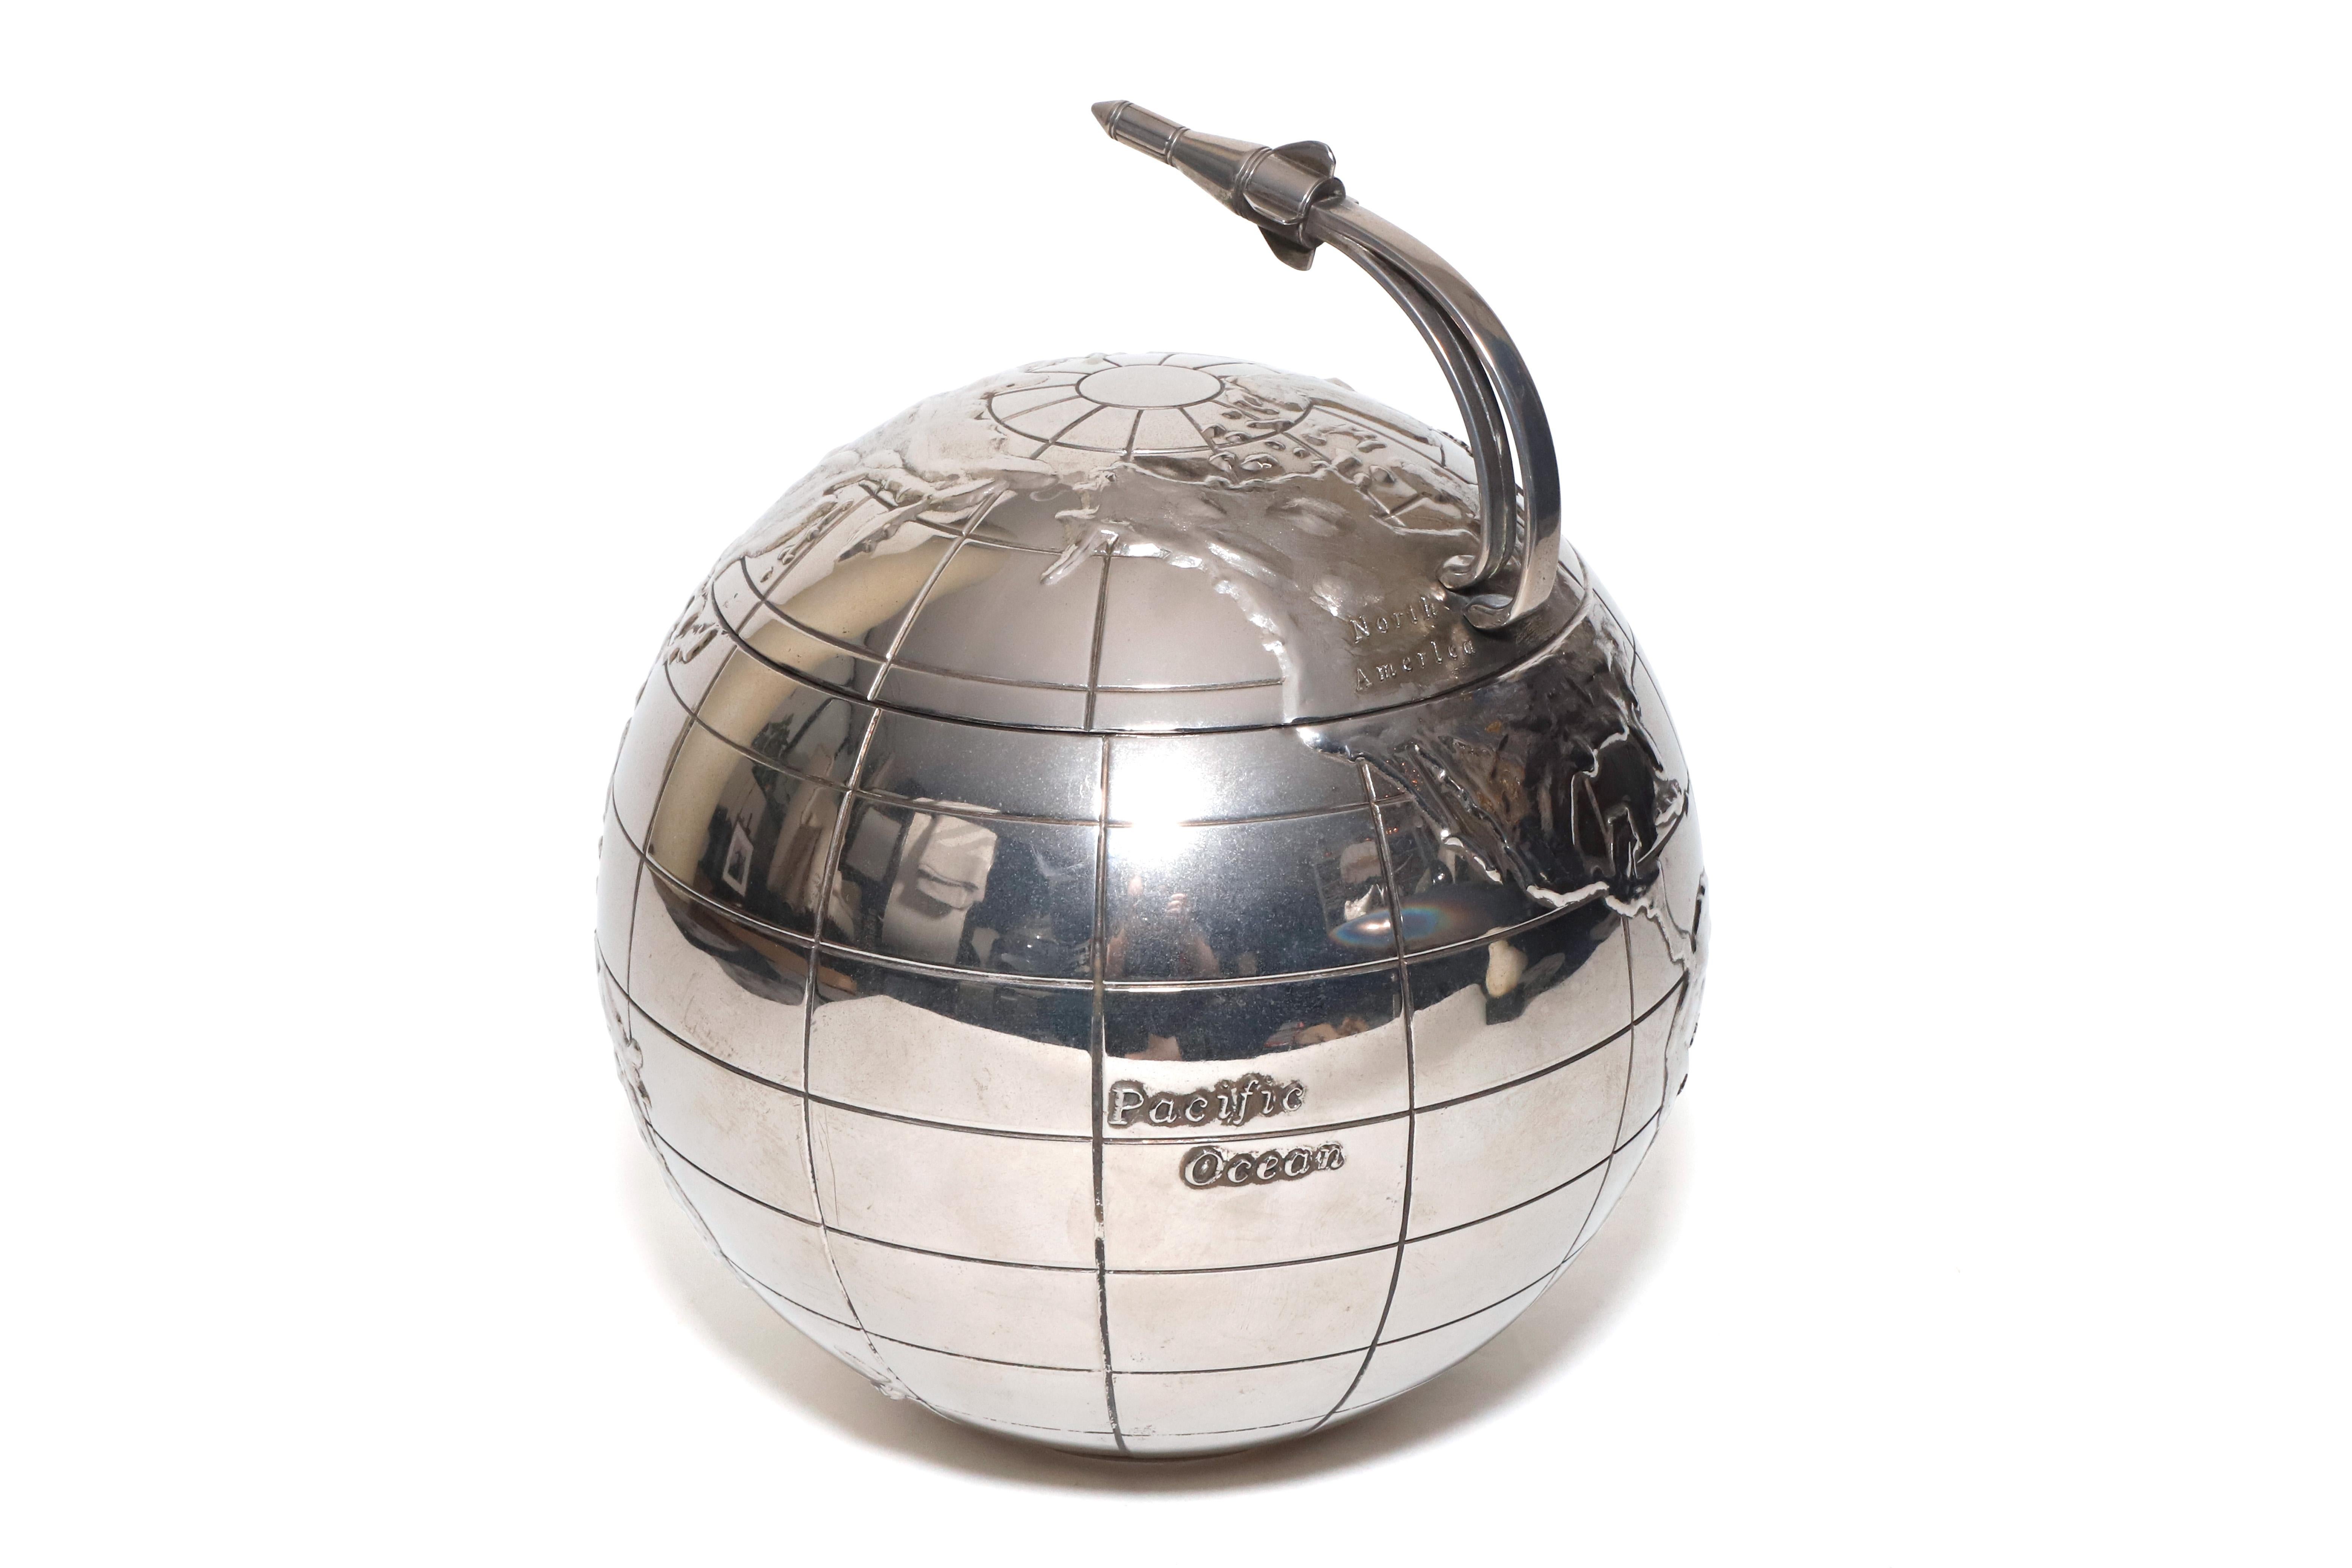 International Silver Co. Seau à glace en forme de globe avec anse en forme de fusée, fabriqué dans les années 1960. Pièce unique plaquée argent, parfaite pour un bar, avec un insert en plastique amovible pour faciliter l'utilisation et le nettoyage.